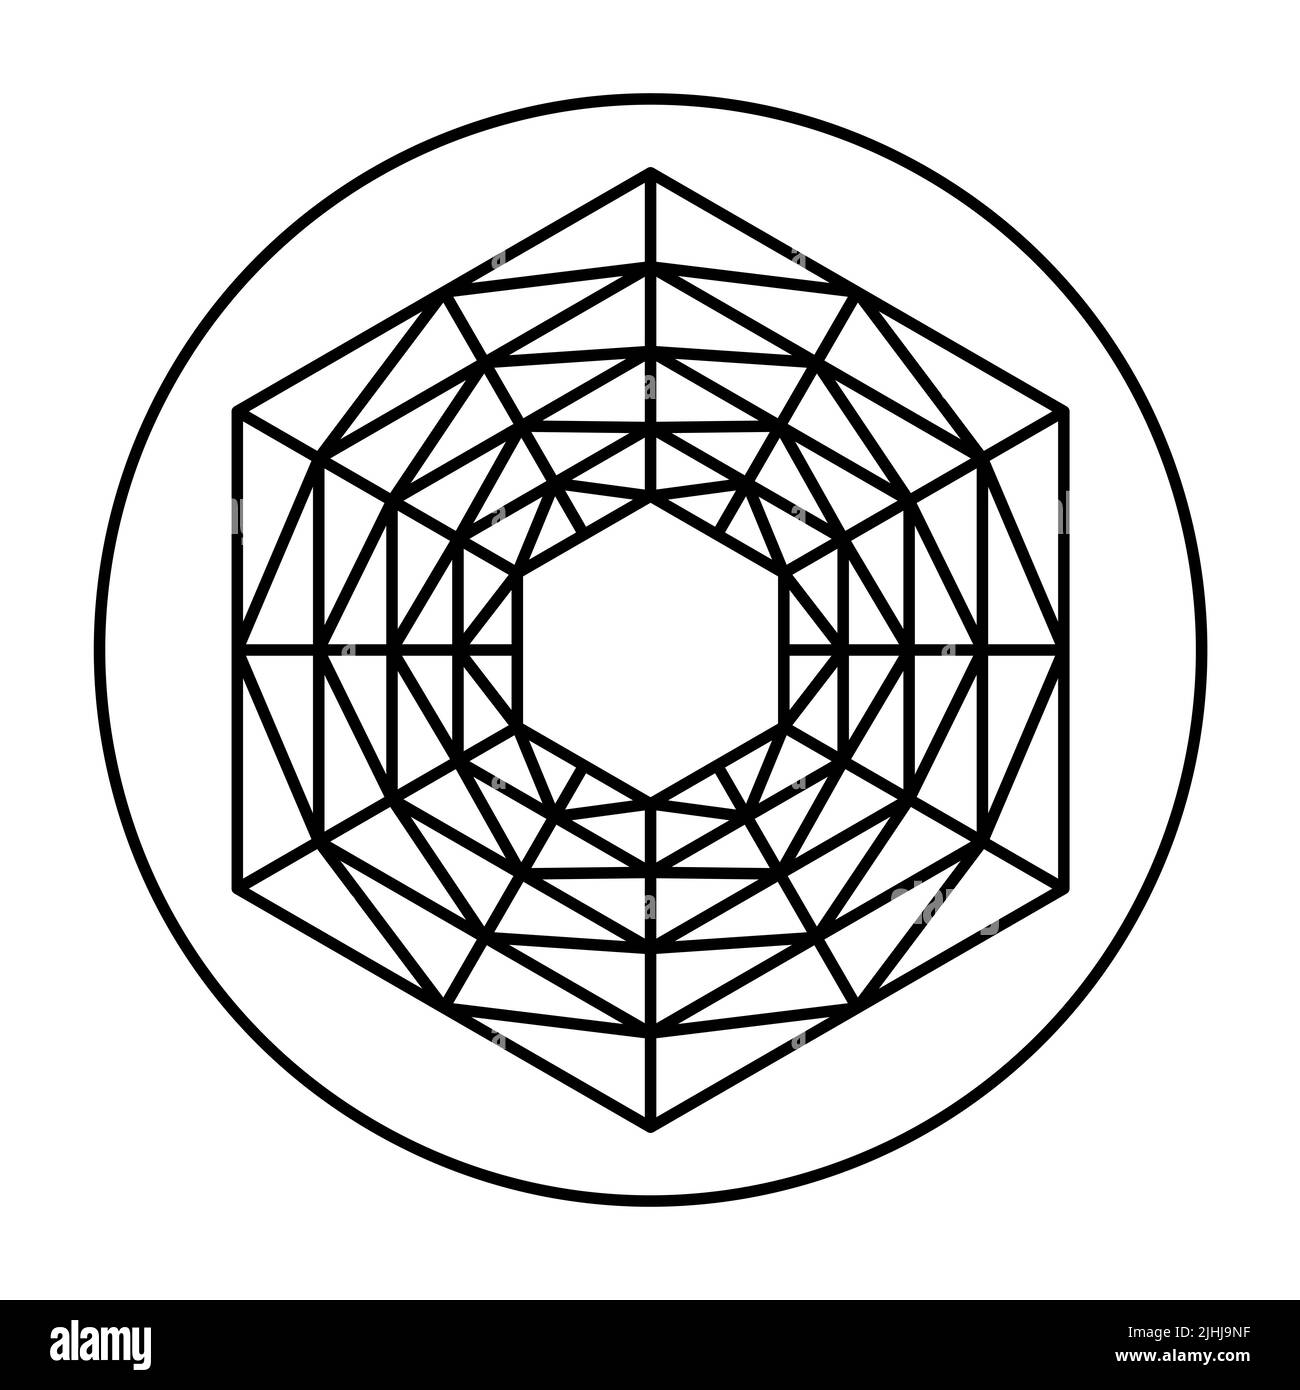 Gittermuster mit symmetrischer sechseckiger Form, in einem Kreis. Fünf Sechsecke, ineinander platziert, verbunden mit Gitternetzlinien. Stockfoto